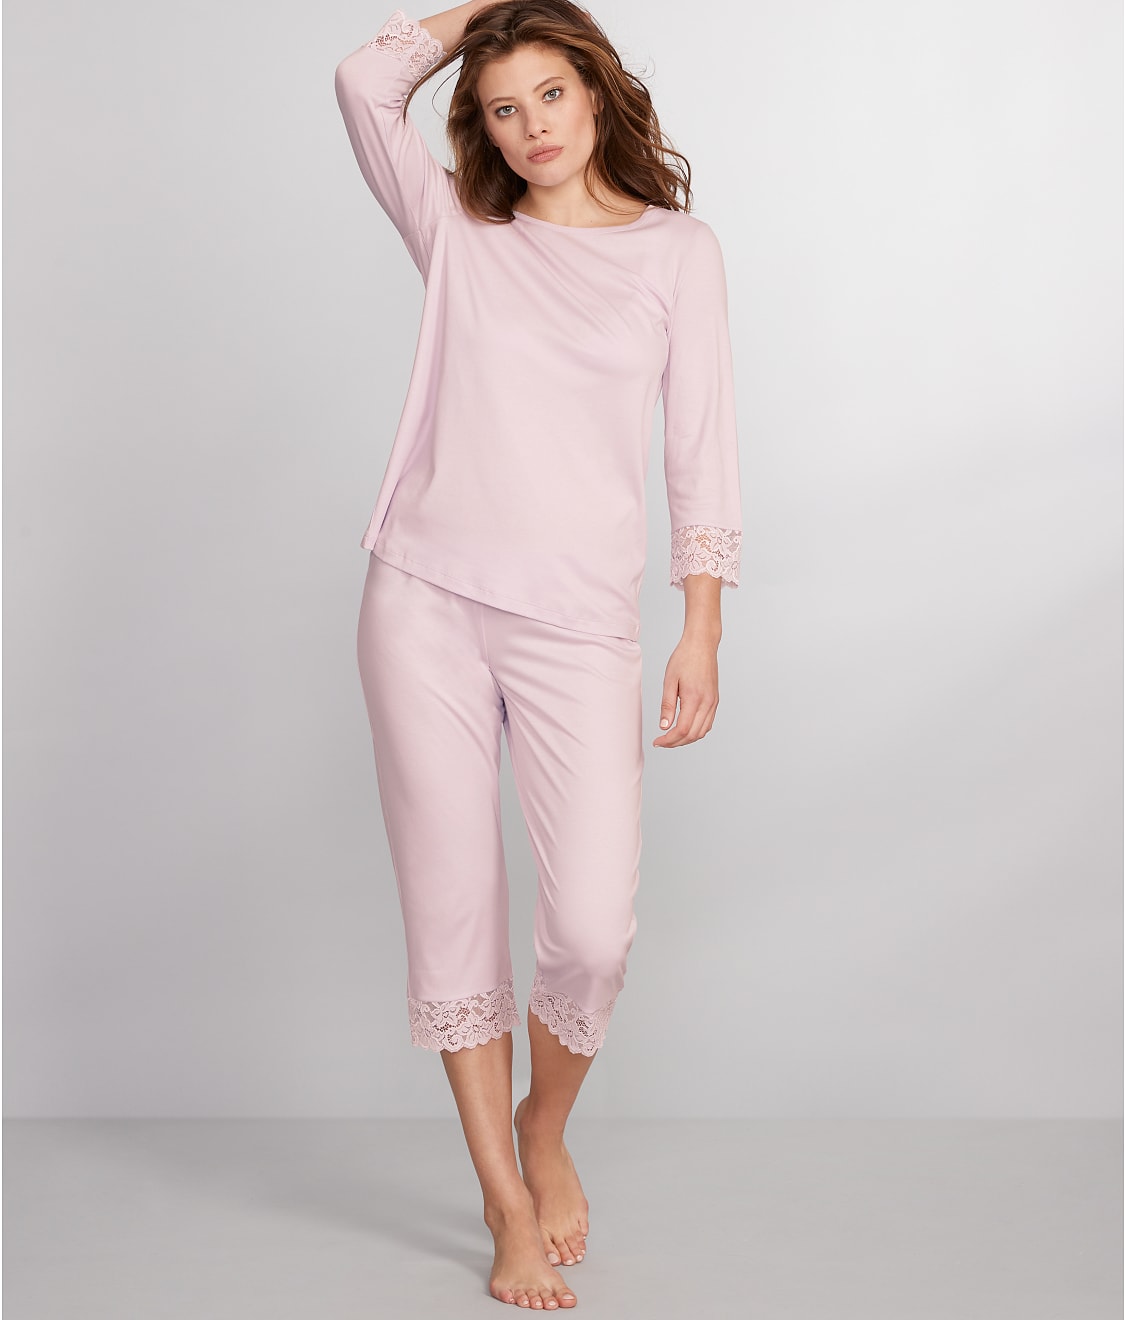 Hanro Moments Cropped Knit Pajama Set & Reviews